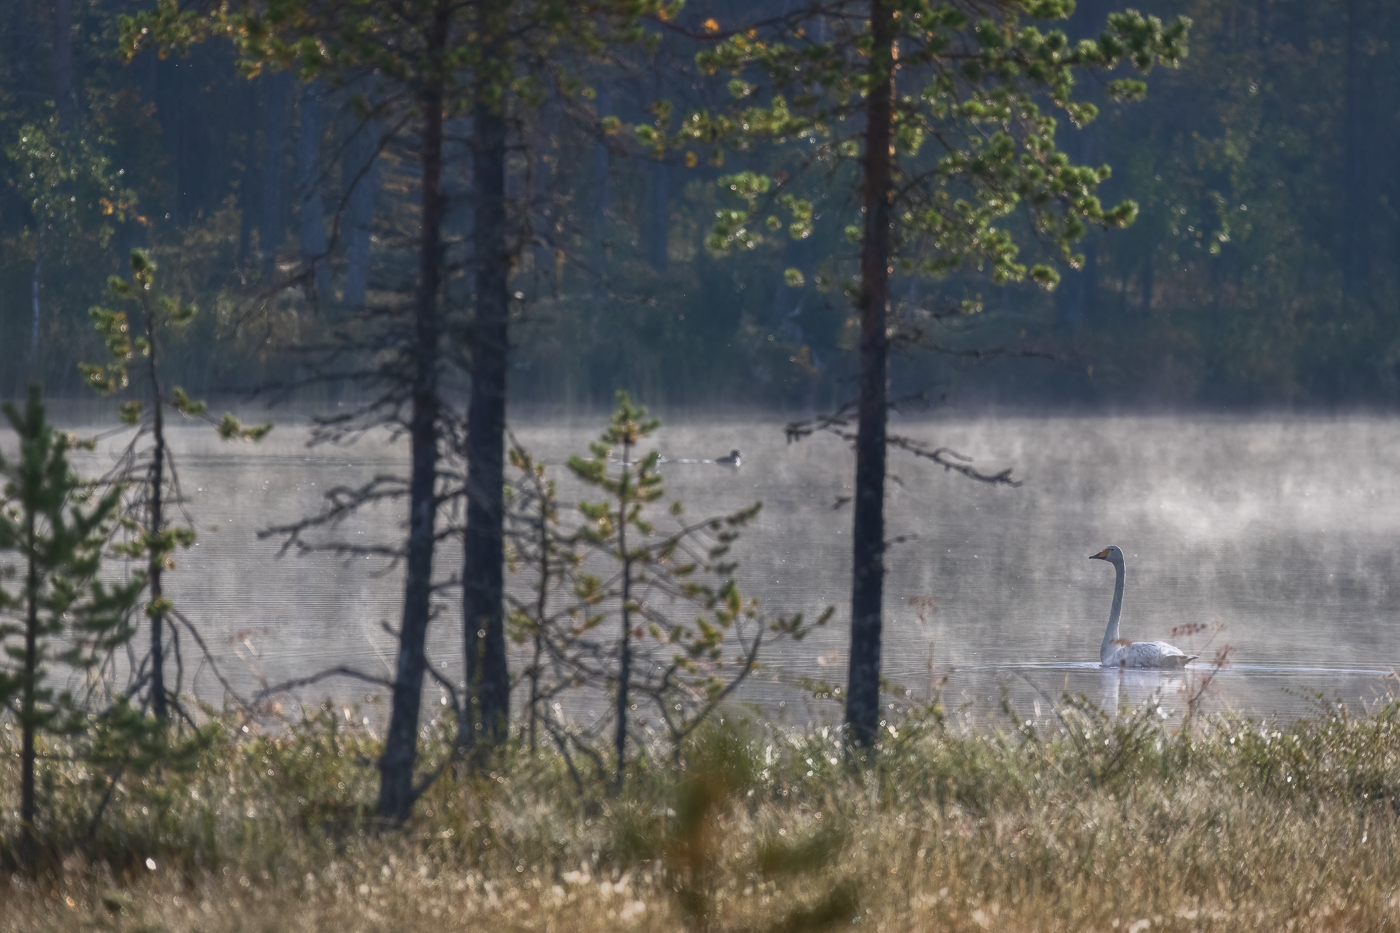 Appena terminato il suo concerto canoro, il cigno selvatico (Cygnus cygnus) lascia la scena con classe. Foresta boreale, Finlandia.